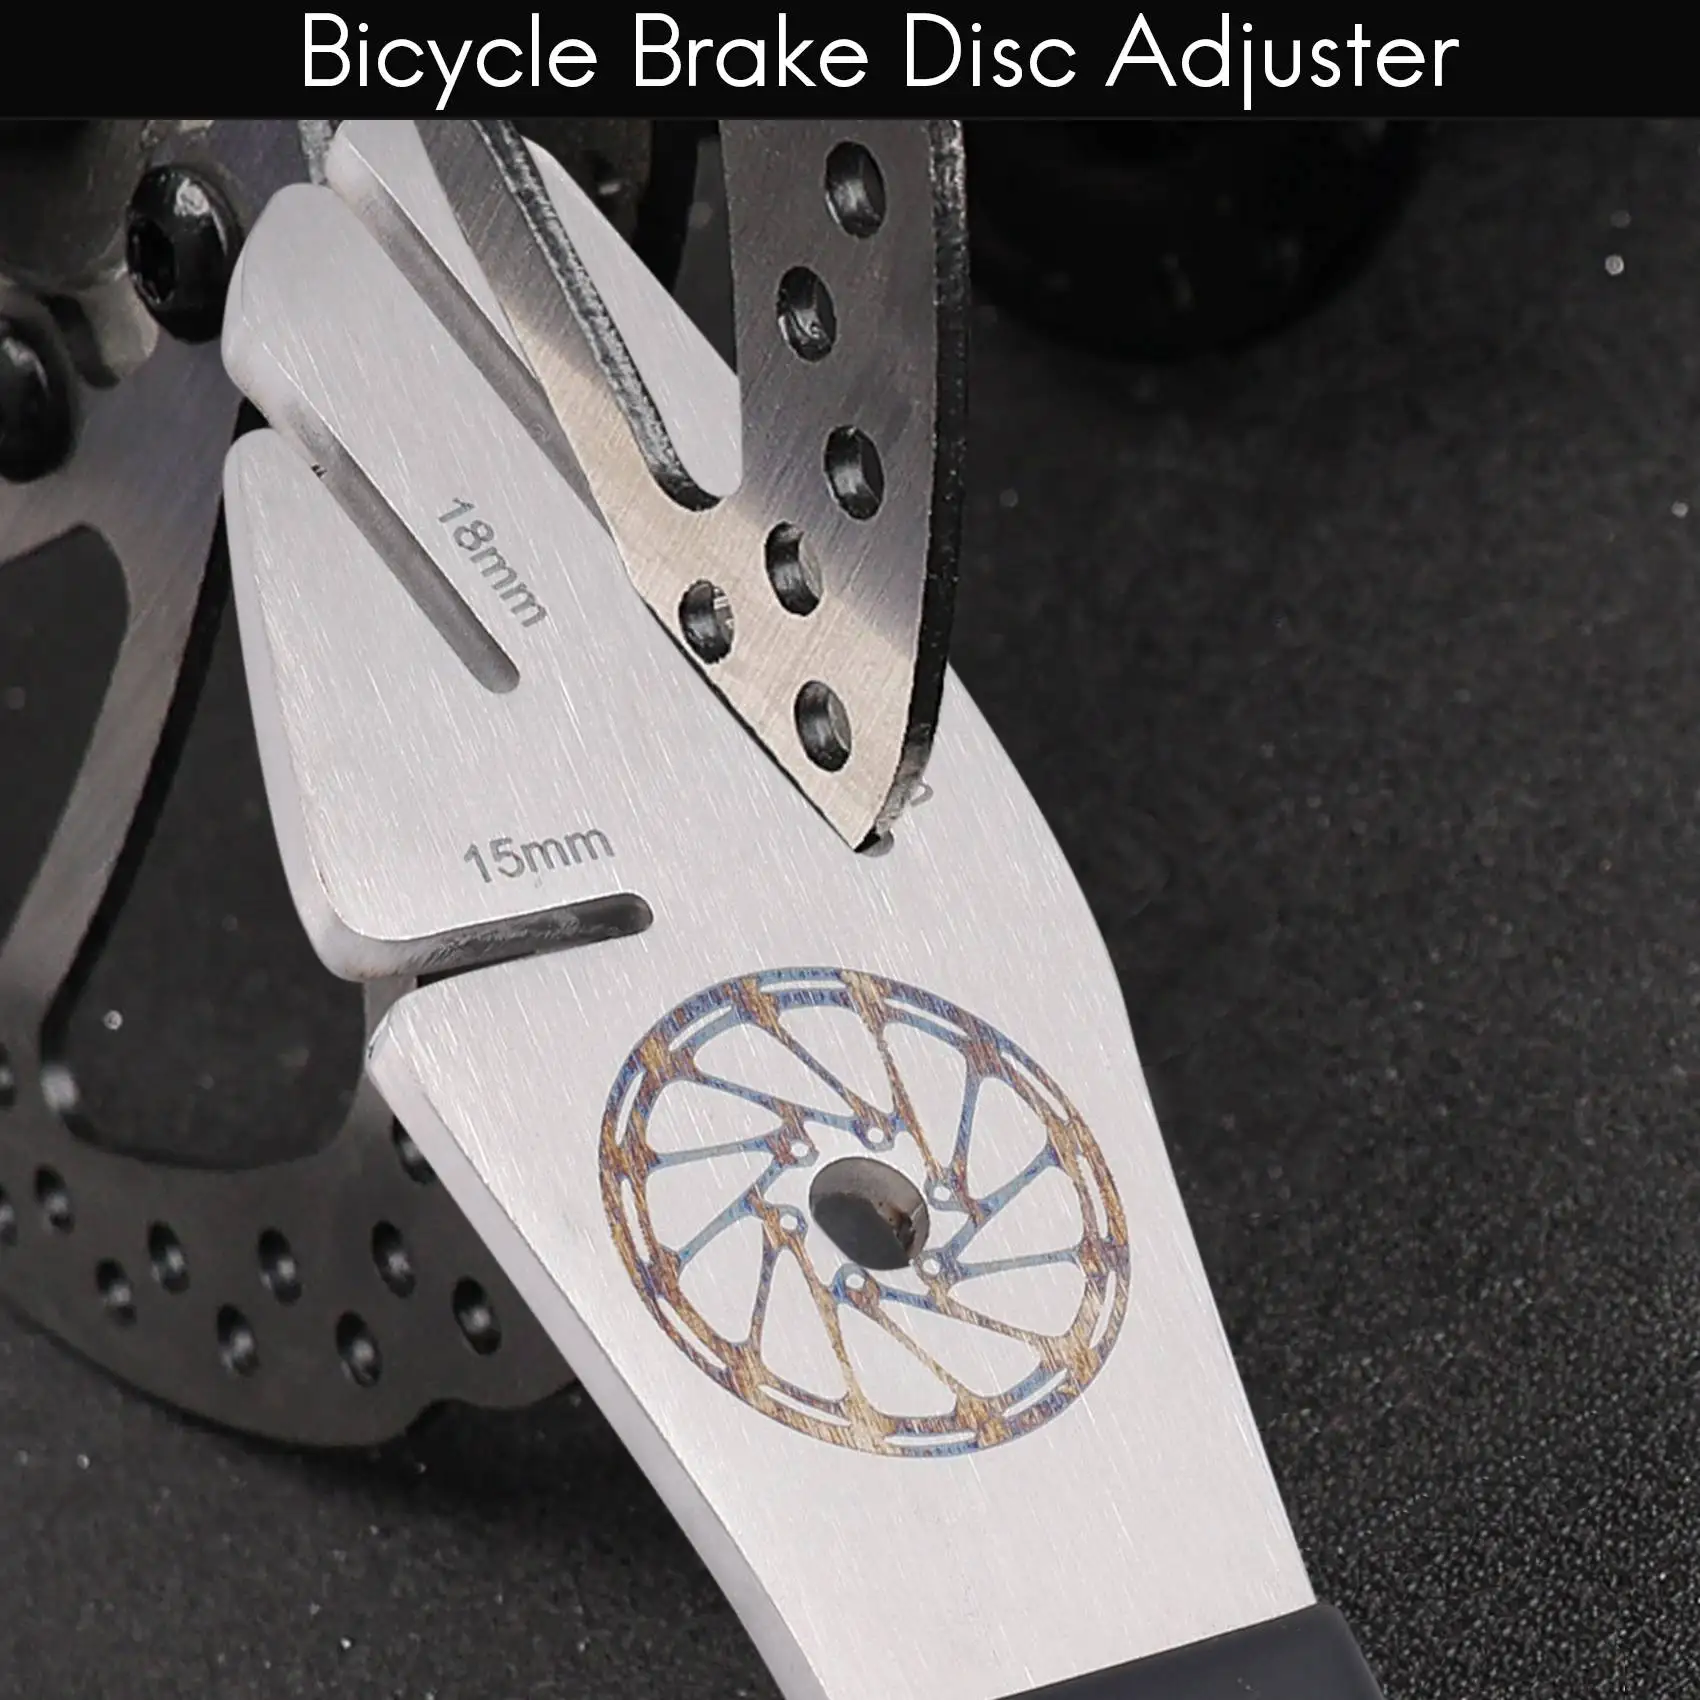 

Дисковый ротор для горного велосипеда, регулирующий тормозной диск для велосипеда, инструмент для коррекции лотка для велосипеда, инструменты для ремонта велосипеда